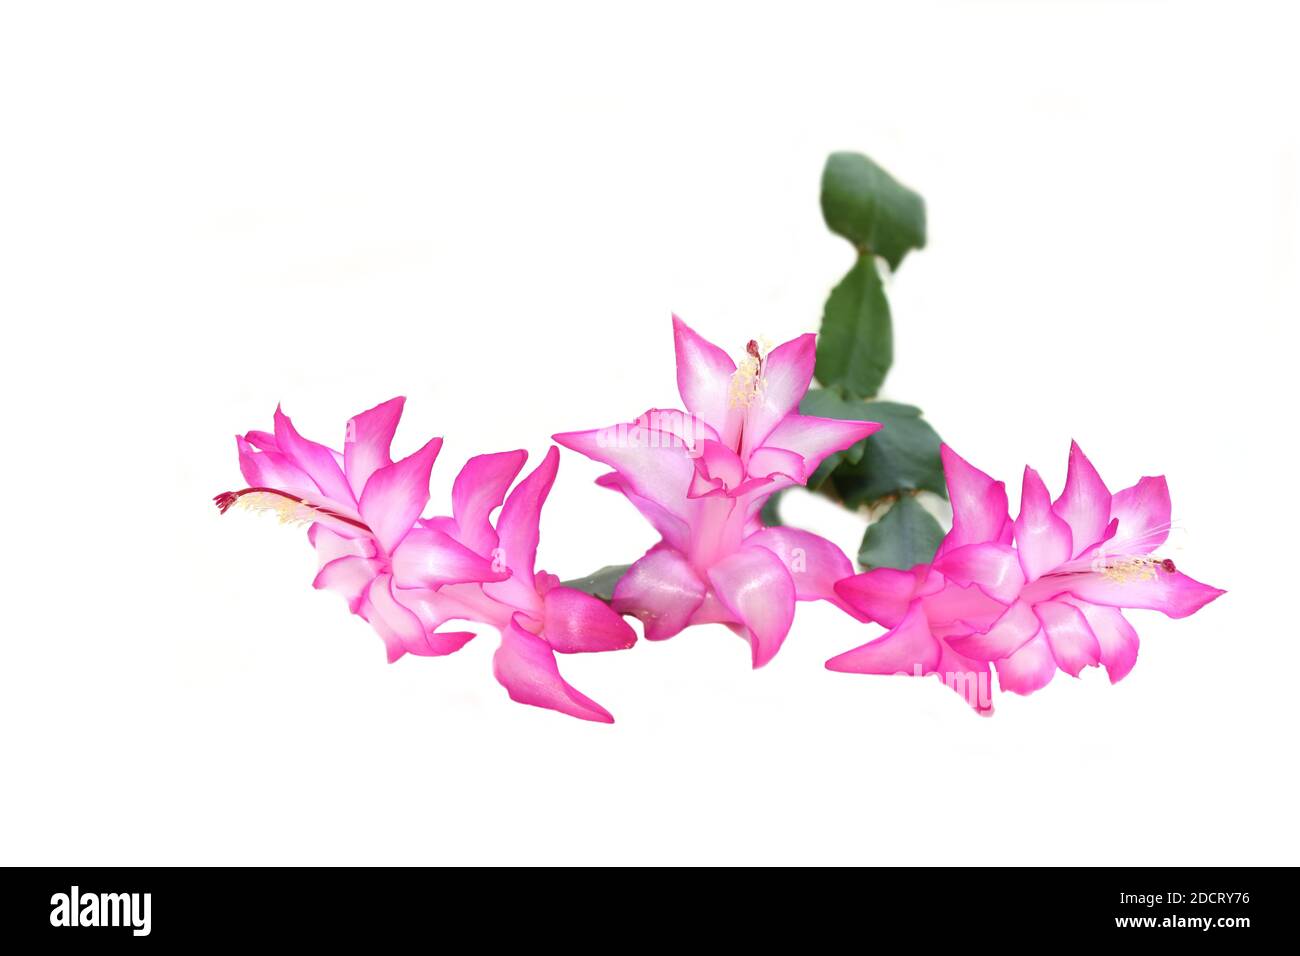 Gros plan sur des fleurs de cactus Schlumbergera roses sur fond blanc Banque D'Images